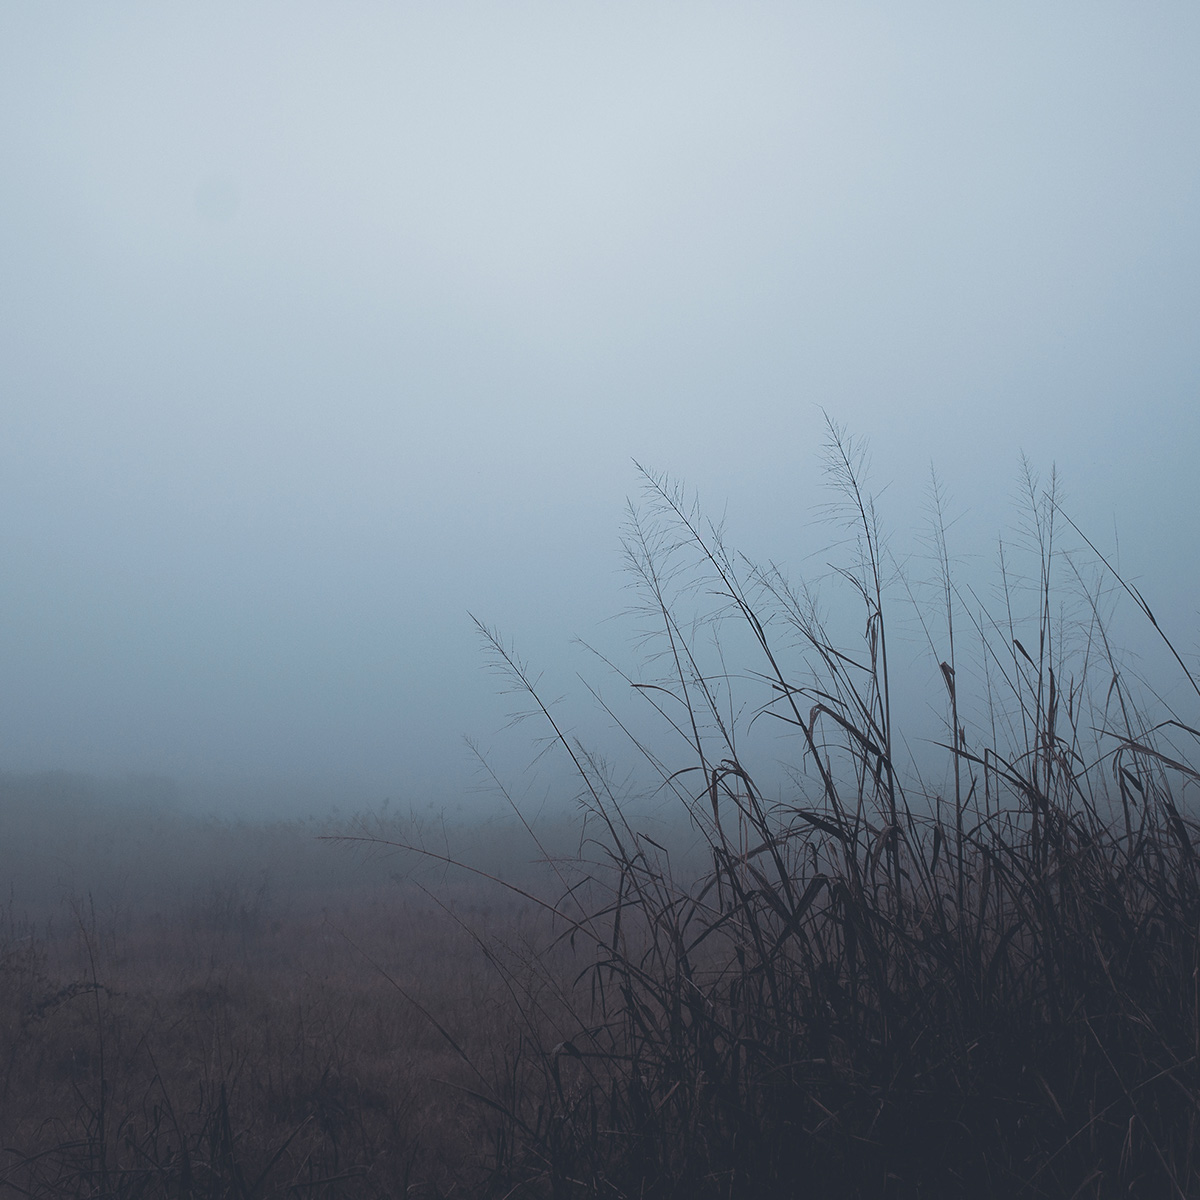 Nature silence minimal fog mist